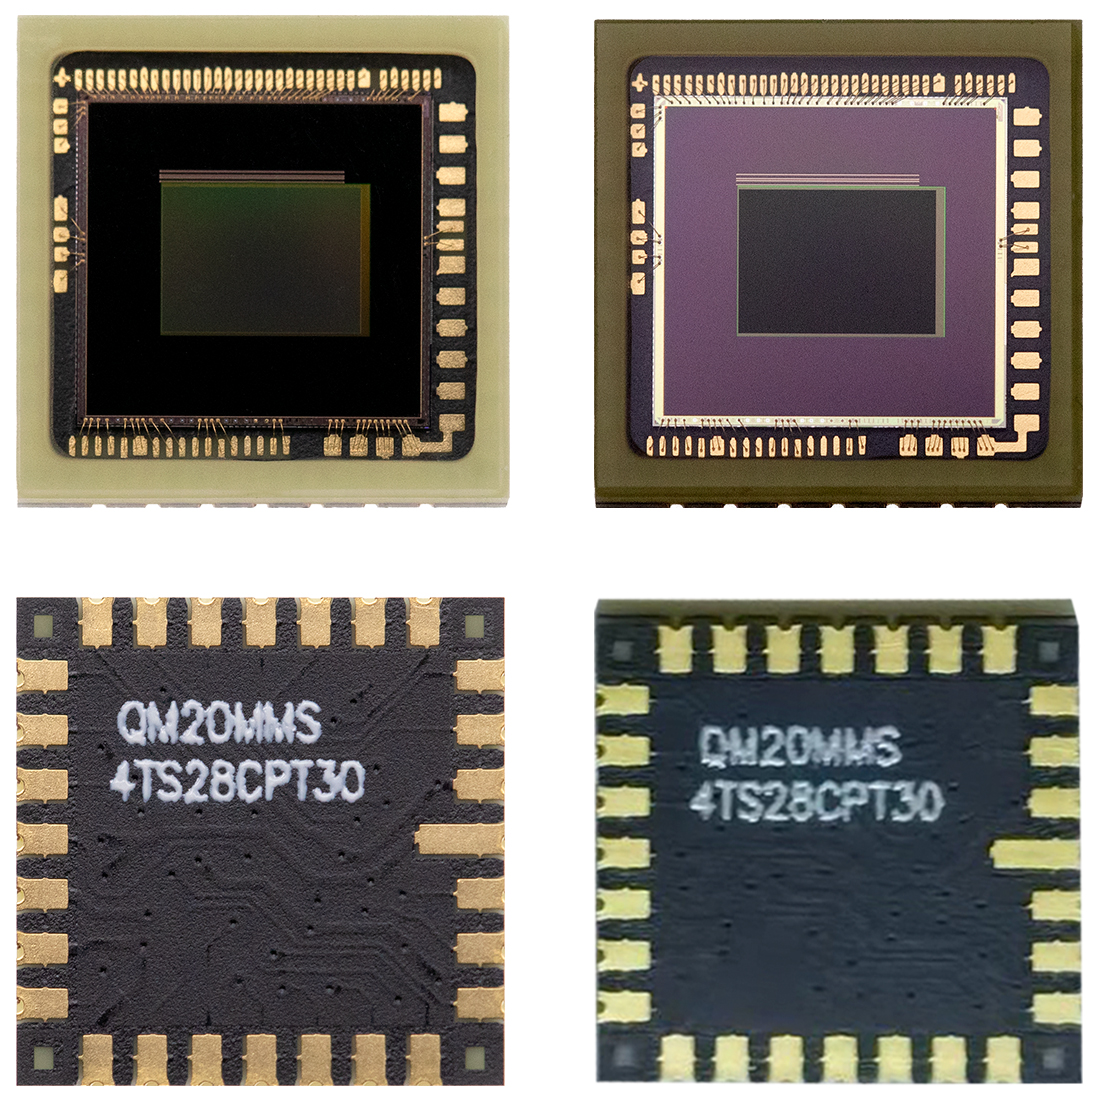 MT9D111,MI2010，QM20MMS-4T28CPT30，美光200万像素SoC, 美国扩展QUADRANT COMPONENTS, PLCC28封装工艺工业相机图像传感器,2MP CMOS SENSOR,1600x1200 cmos sensor,1/3-Inch 2-megapixel SOC, 片上系统 Sensor Module